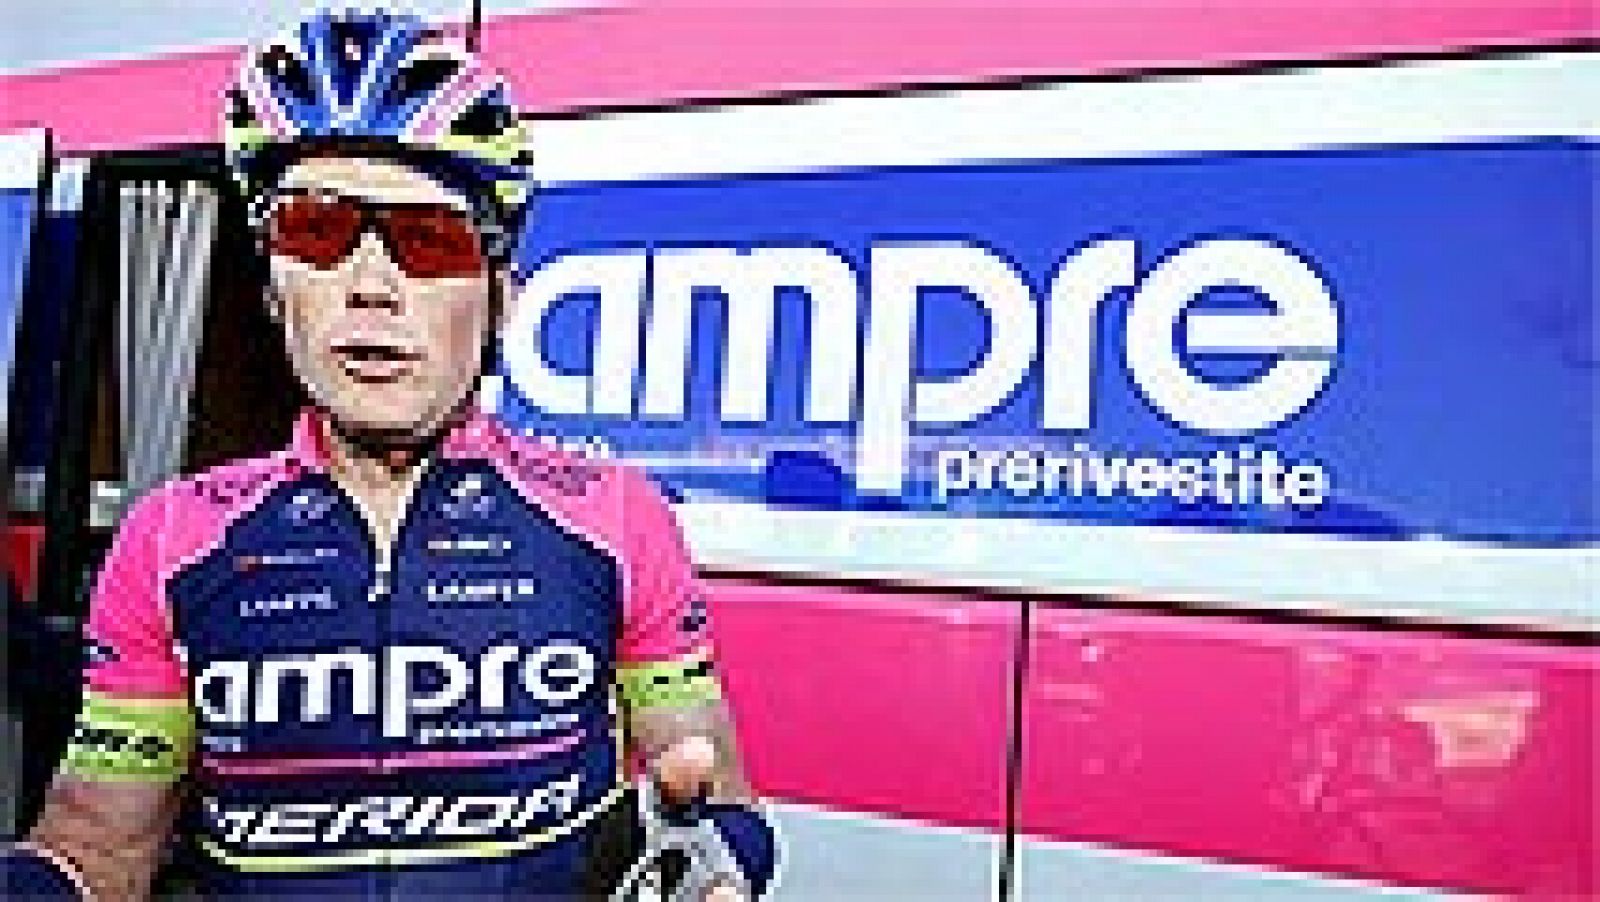 El estadounidense Chris Horner (Lampre) no podrá defender el título de la Vuelta logrado en 2013 al causar baja debido a "los bajos niveles de cortisol", según informa su equipo.